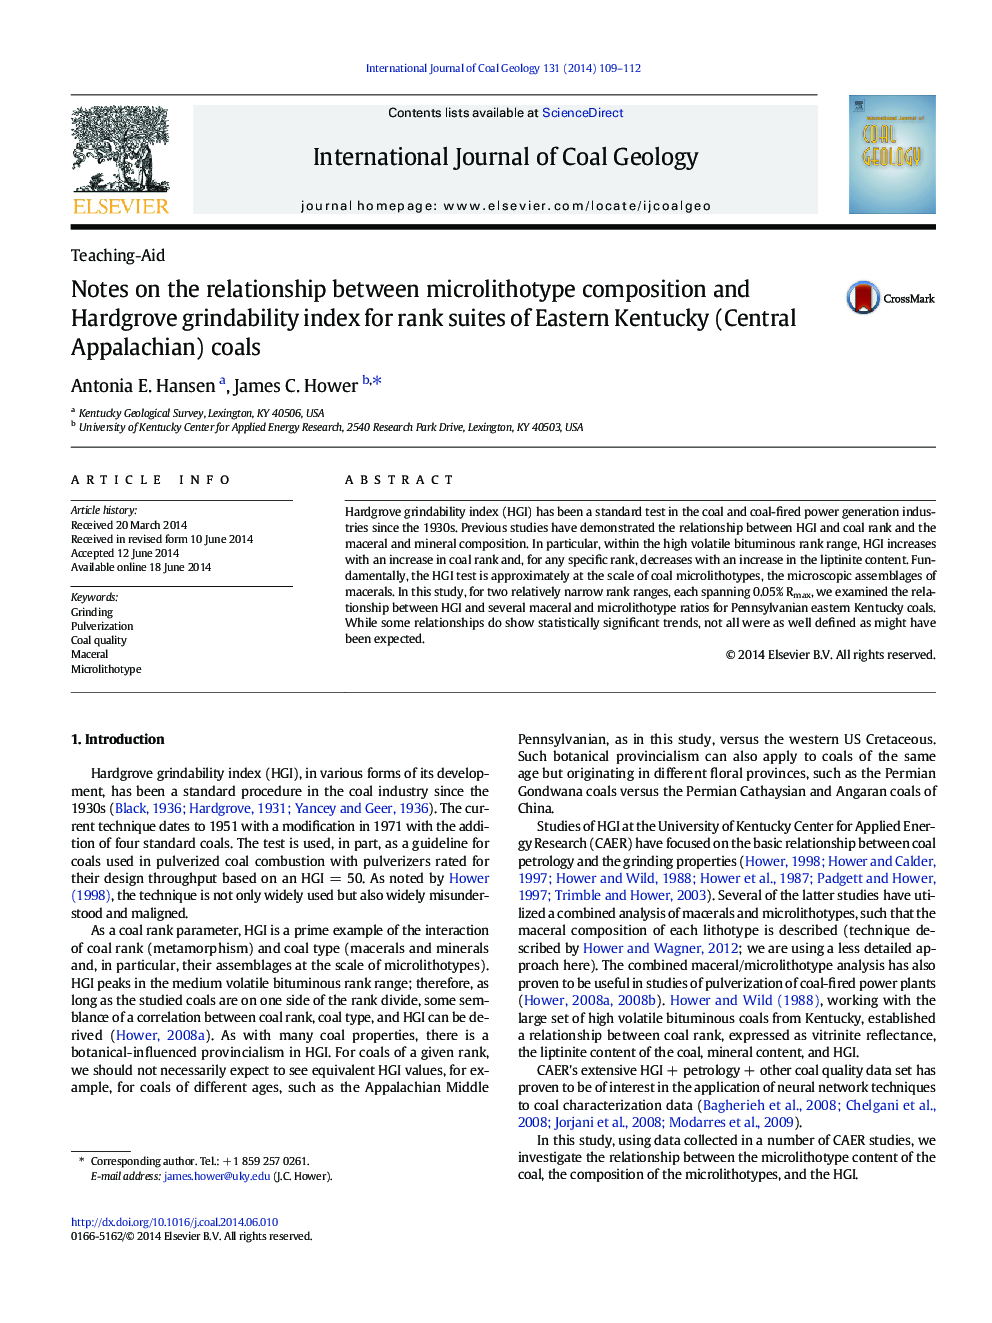 یادداشت های مربوط به رابطه ترکیب میکرولیتیوتیک و شاخص سختی هاردراگو برای مجموعه های دسته ای از زغالسنگ شرقی کنتاکی (مرکزی آپالاچی) 